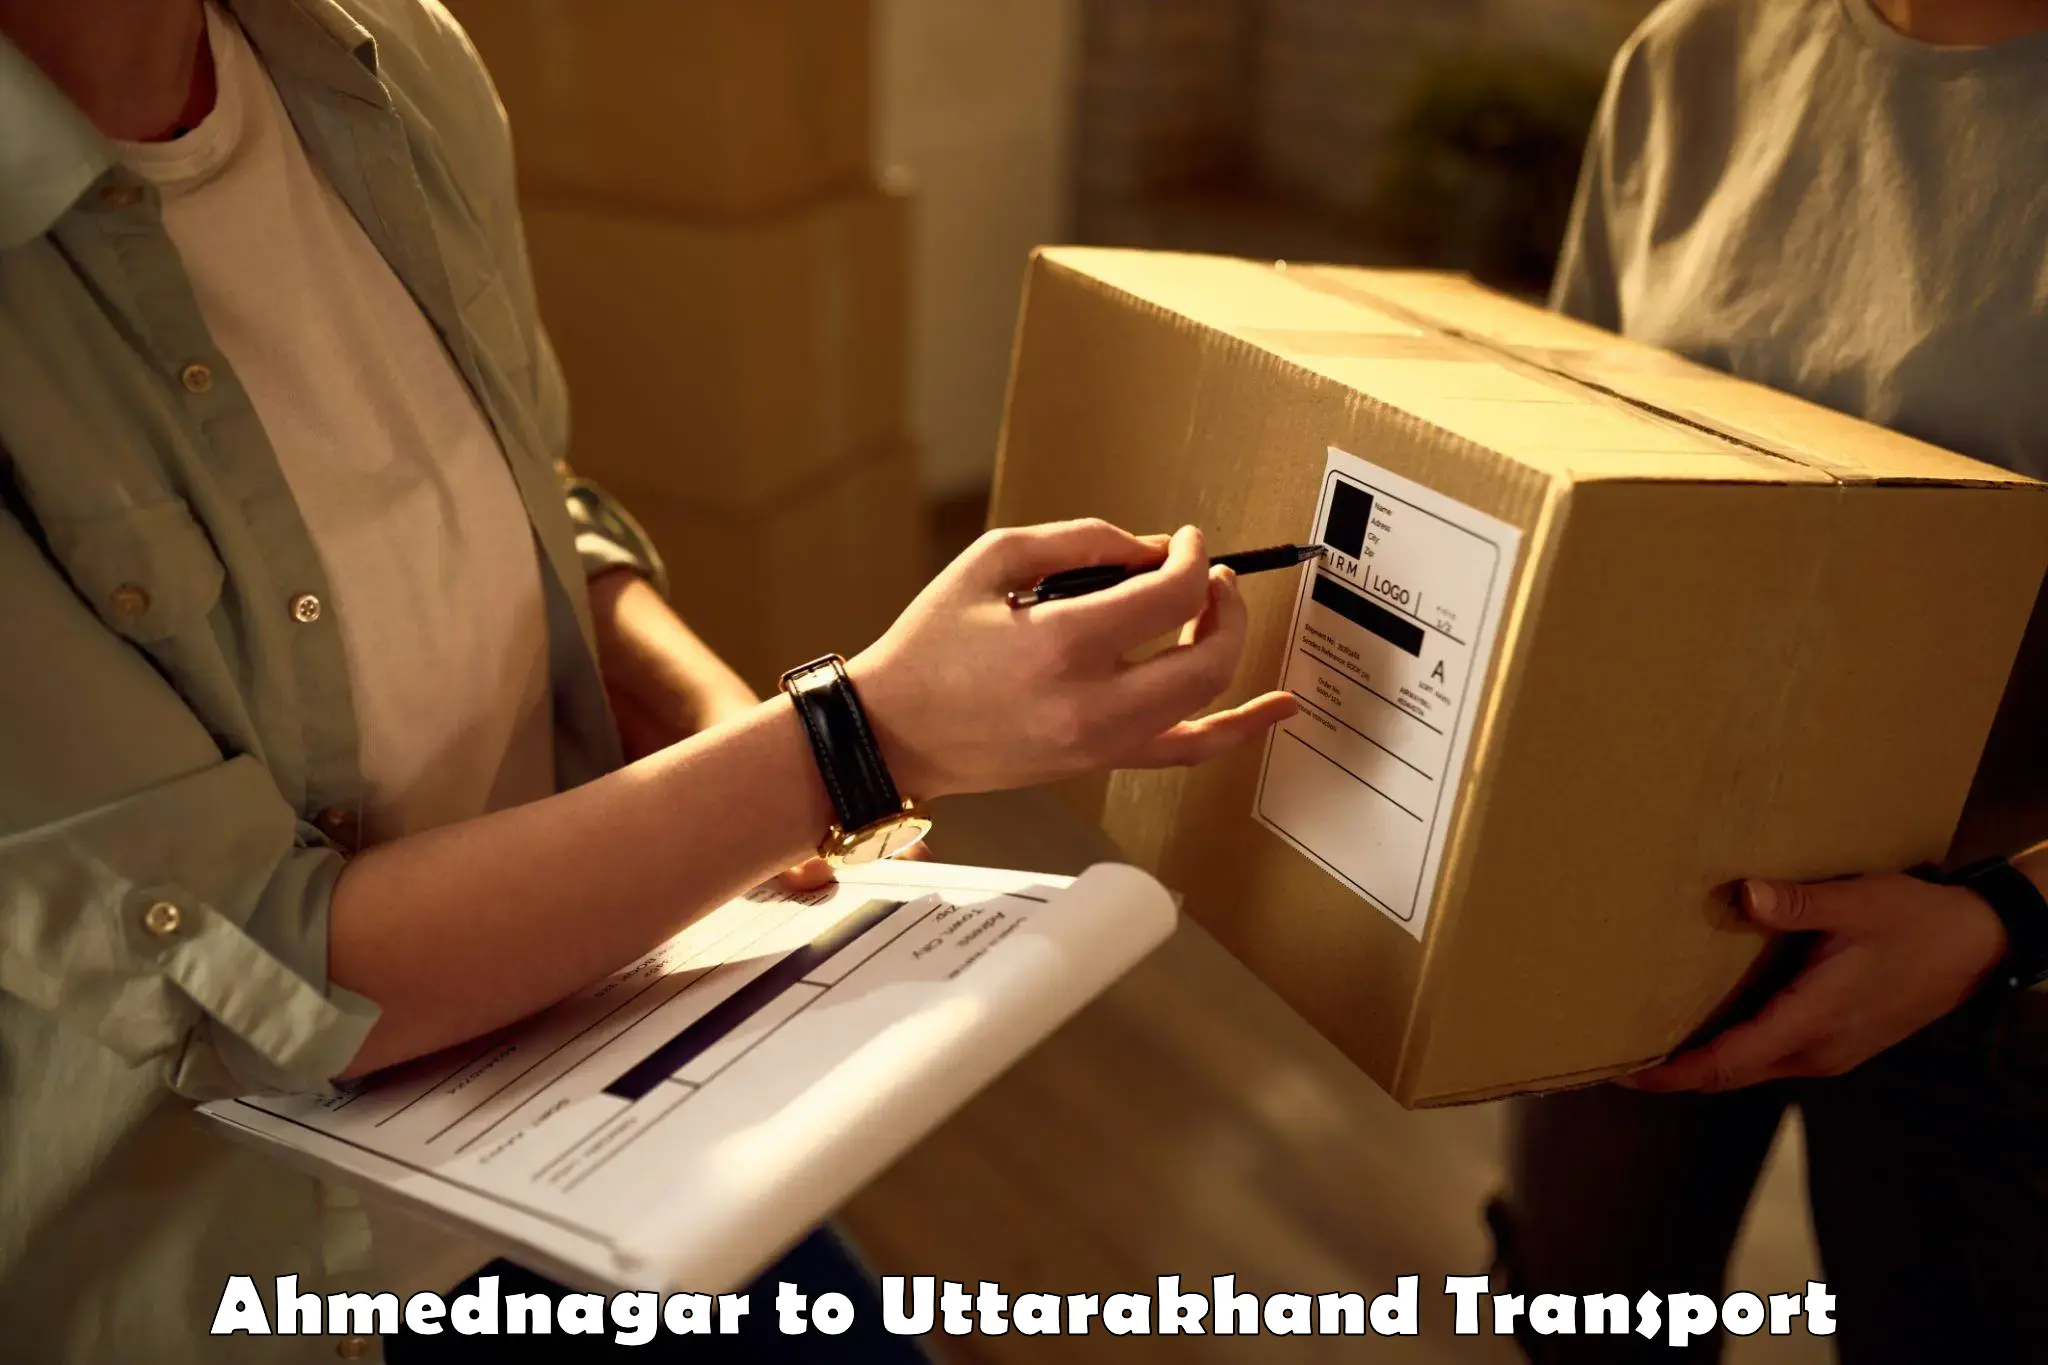 Daily parcel service transport Ahmednagar to Uttarakhand